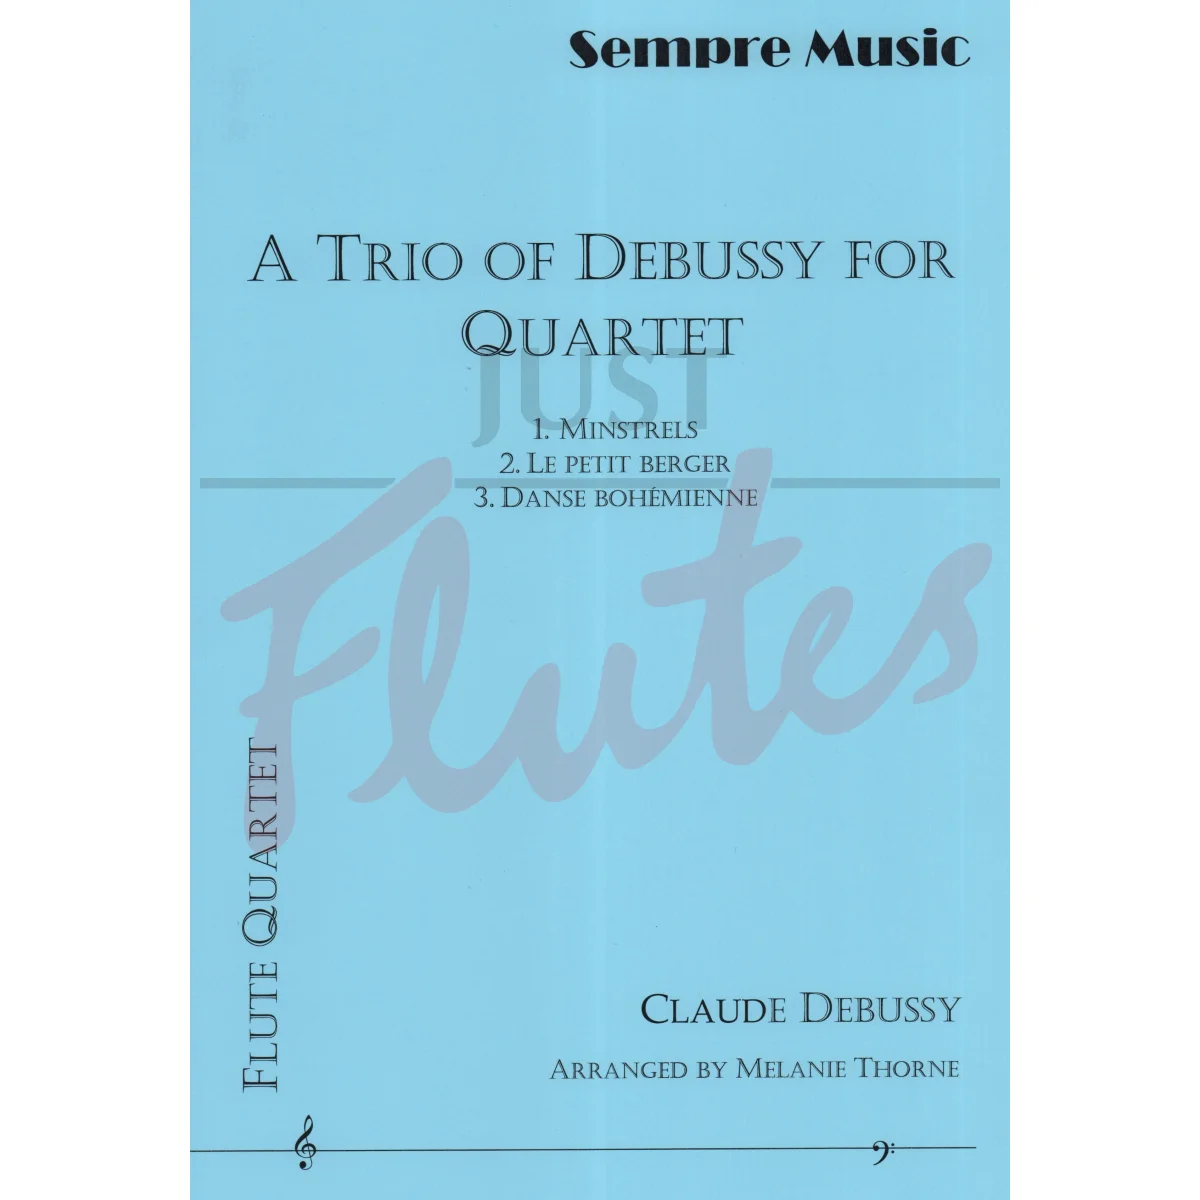 A Trio of Debussy for Flute Quartet